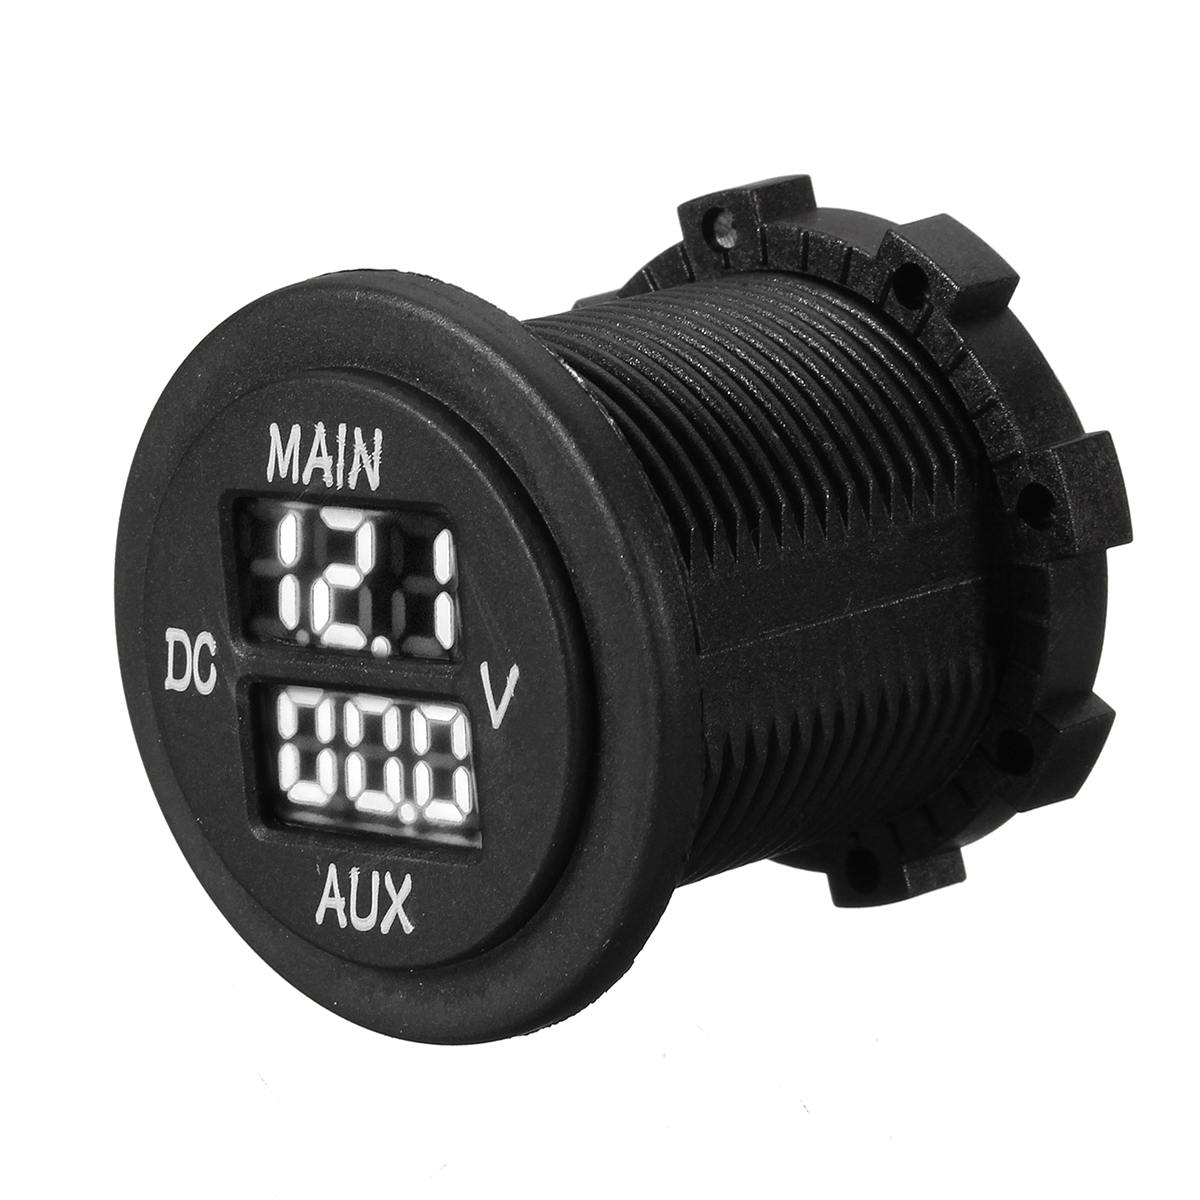 12V 24V AUX Main LED Digital Dual Voltmeter Voltage Gauge Battery Monitor Panel